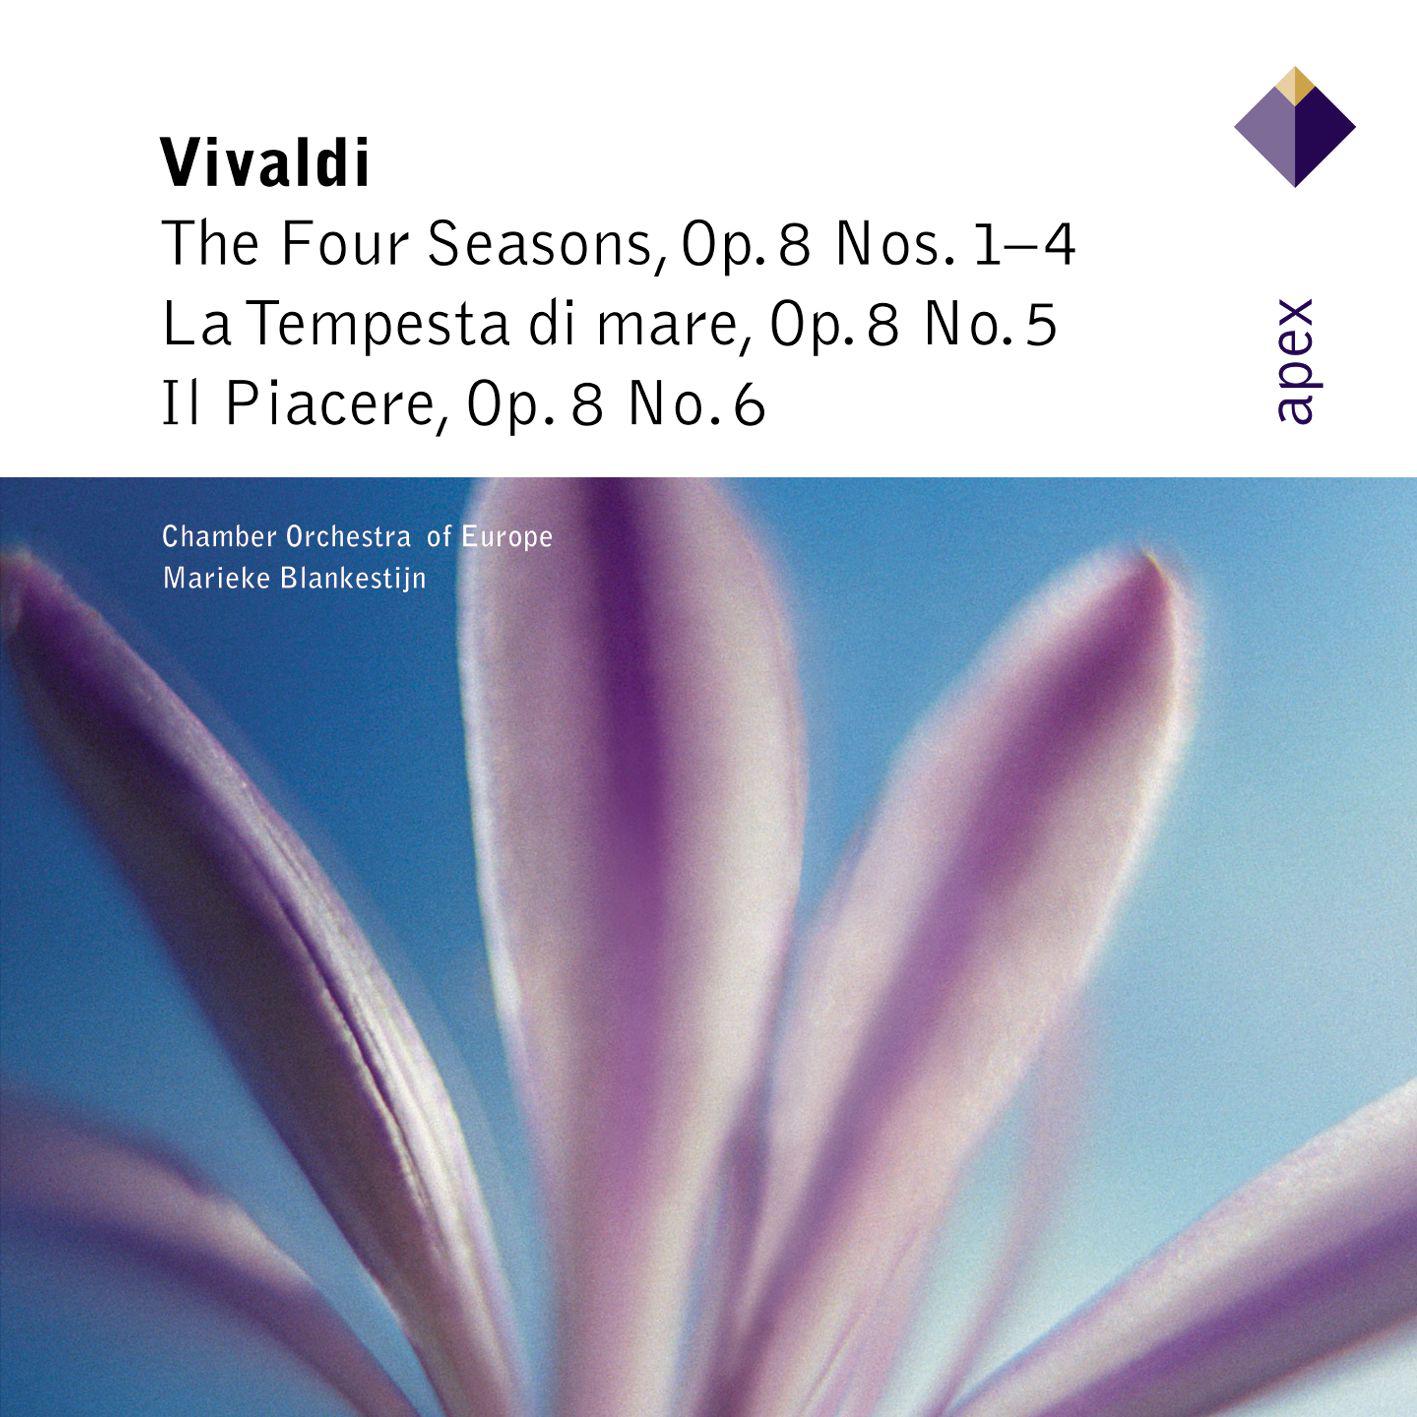 The Four Seasons, Violin Concerto in F Minor, Op. 8 No. 4, RV 297, "Winter": I. Allegro non molto